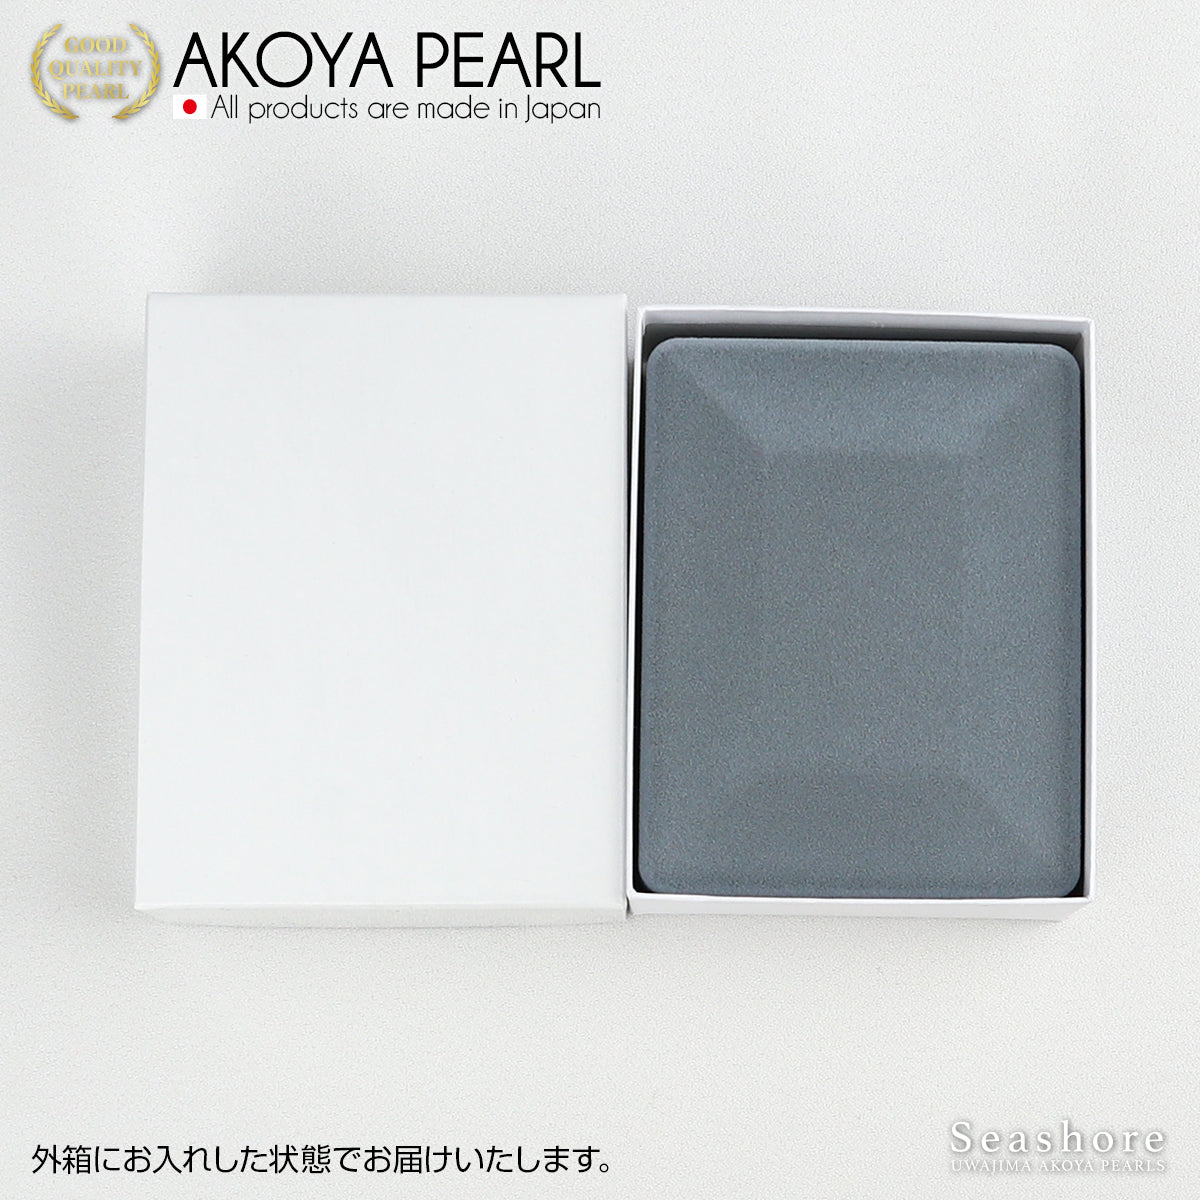 手链盒 紧凑型仿丝绒面料 珍珠盒 灰色 (2.0.745.155) 